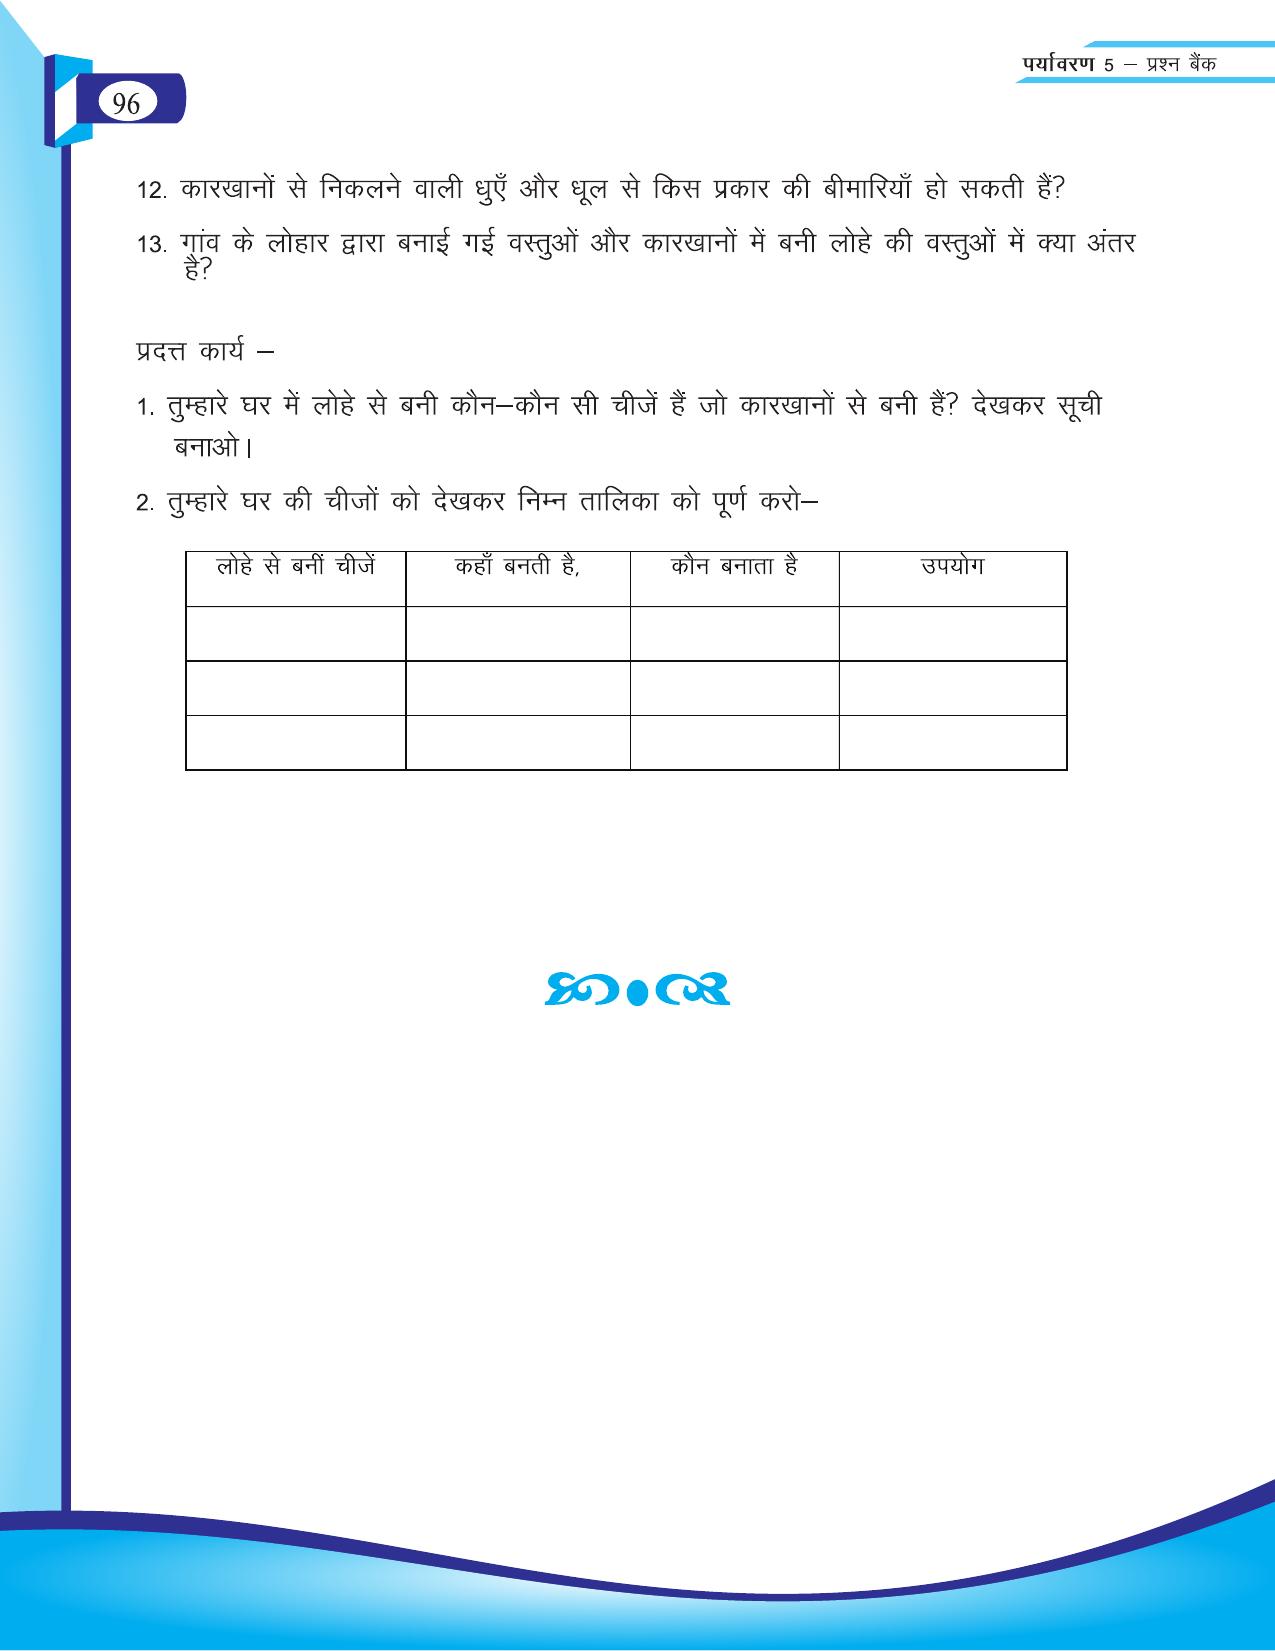 Chhattisgarh Board Class 5 EVS Question Bank 2015-16 - Page 22